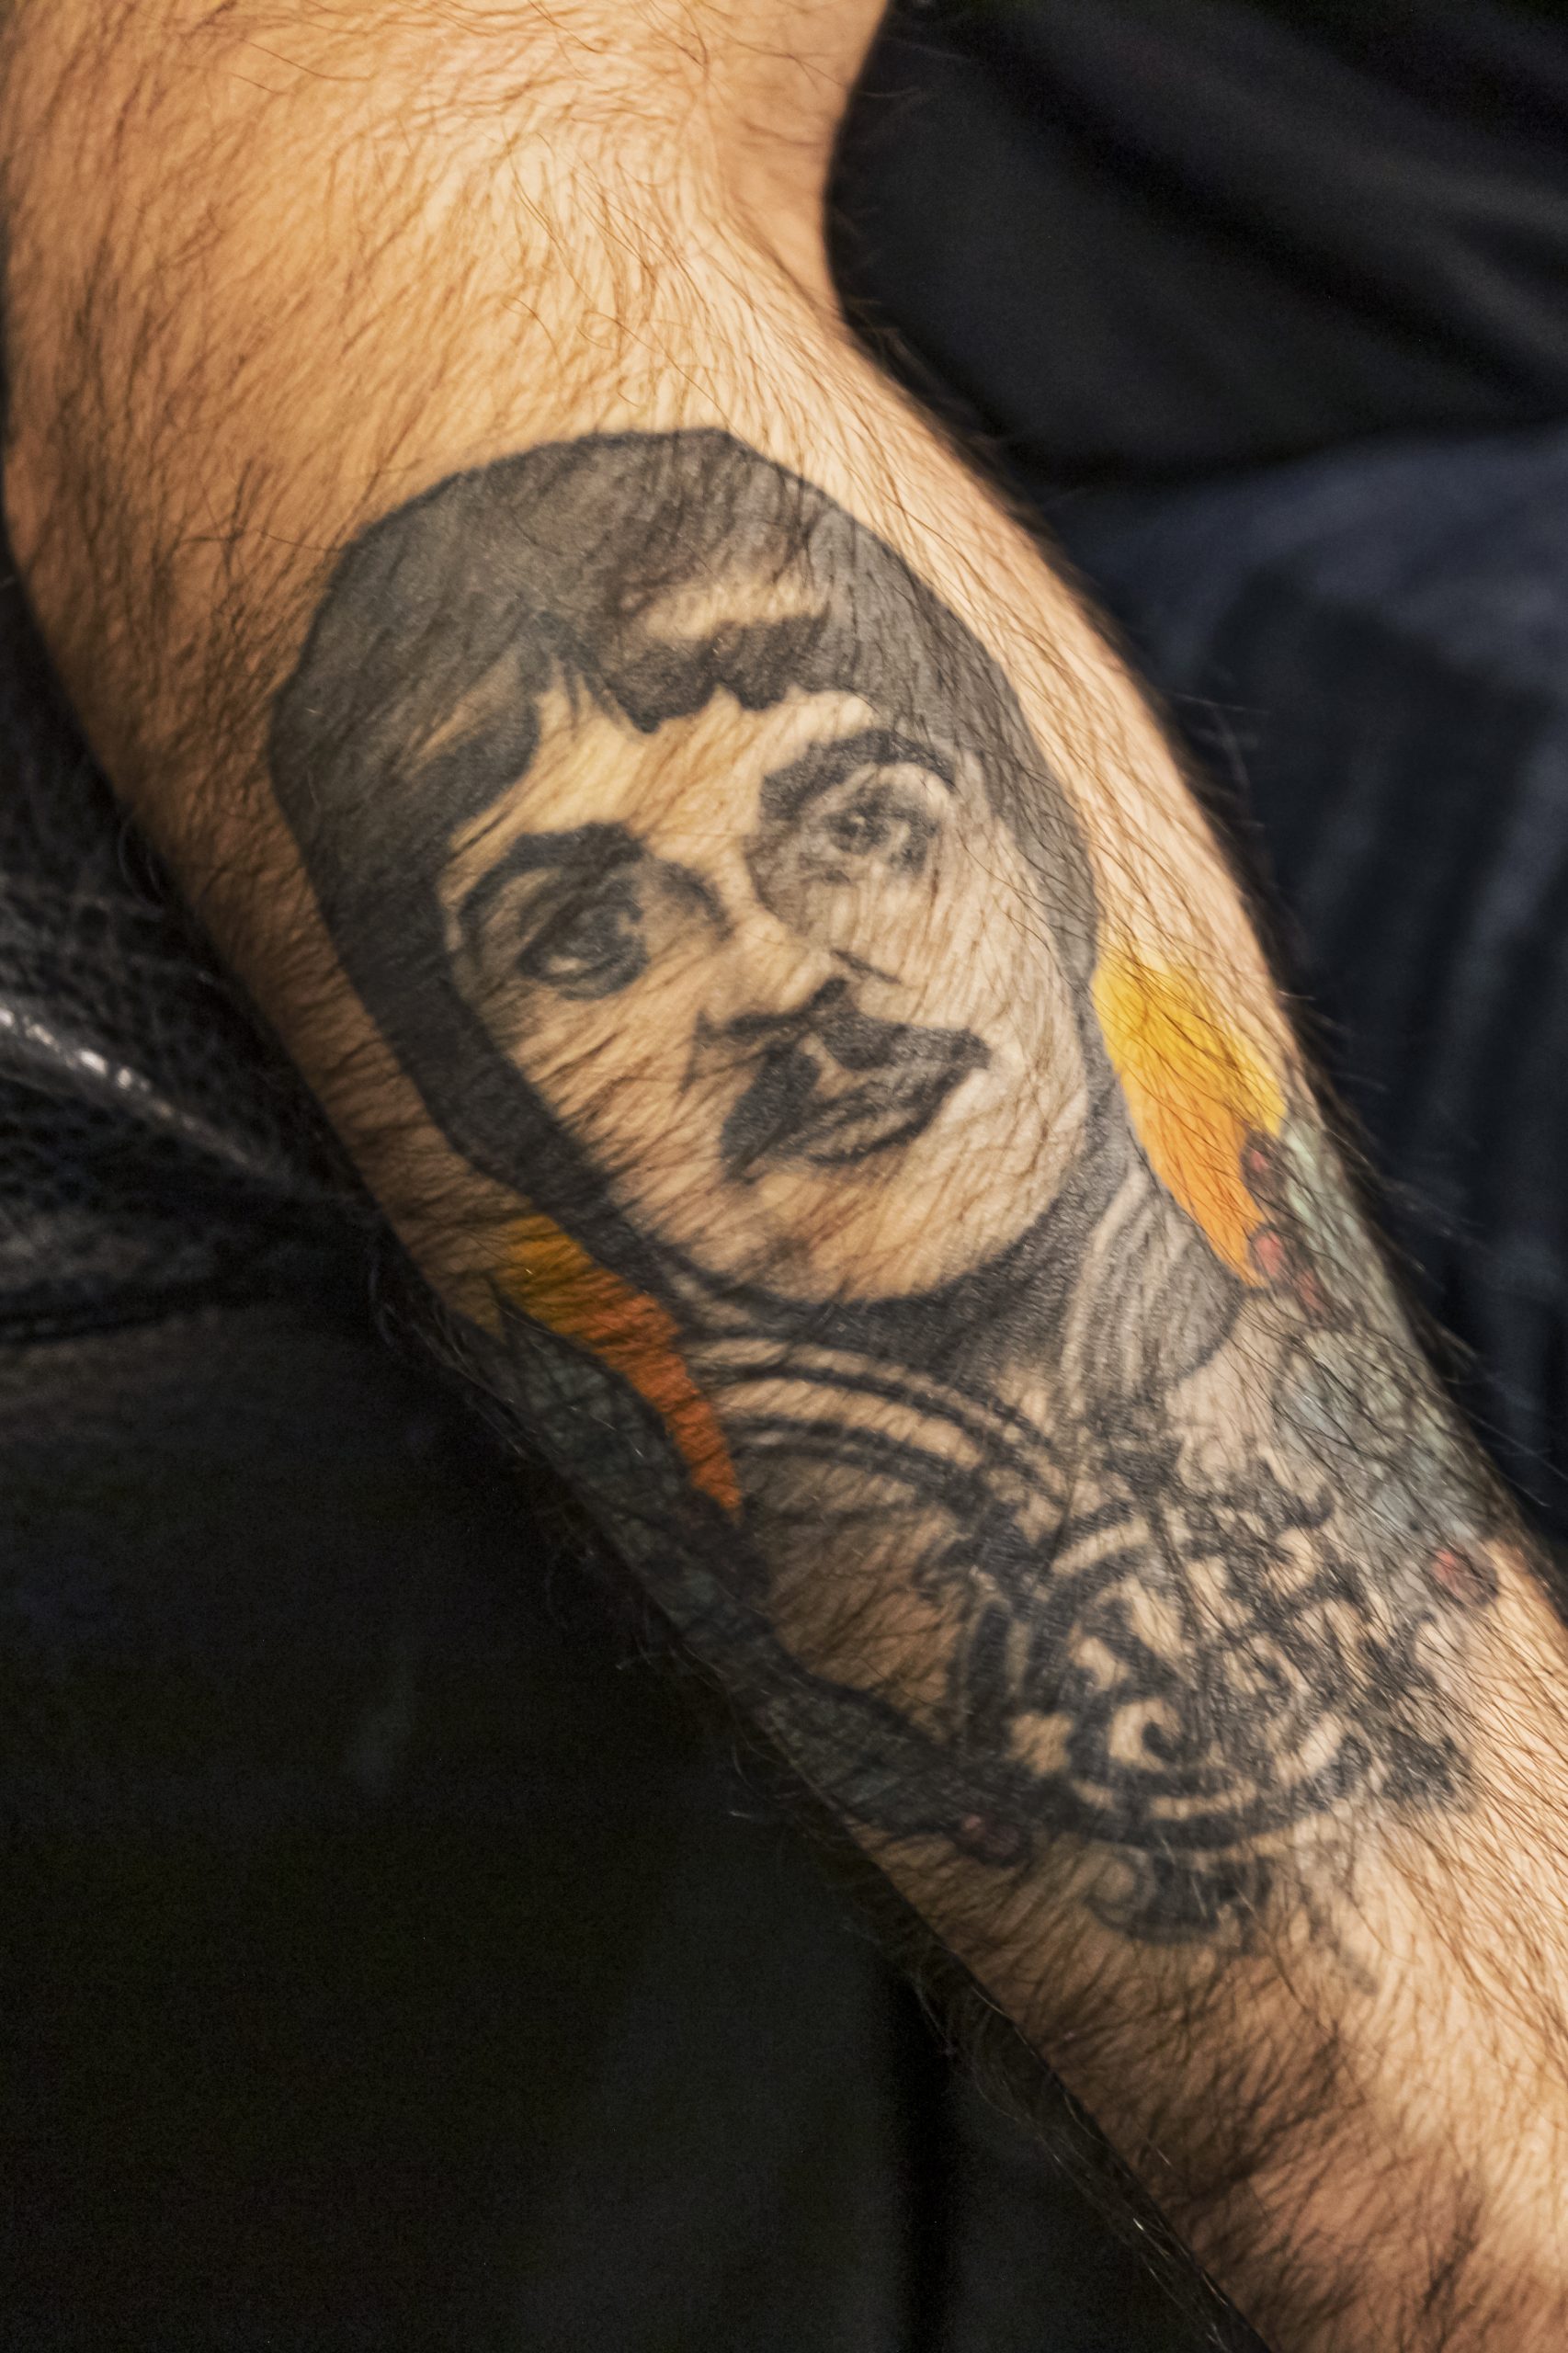 Il volto di Paul Mc Cartney tatuato sul braccio di Alessandro un italiano diventato manager del Cavern club lo storico locale in Mathew st. dove iniziarono a suonare i Beatles.